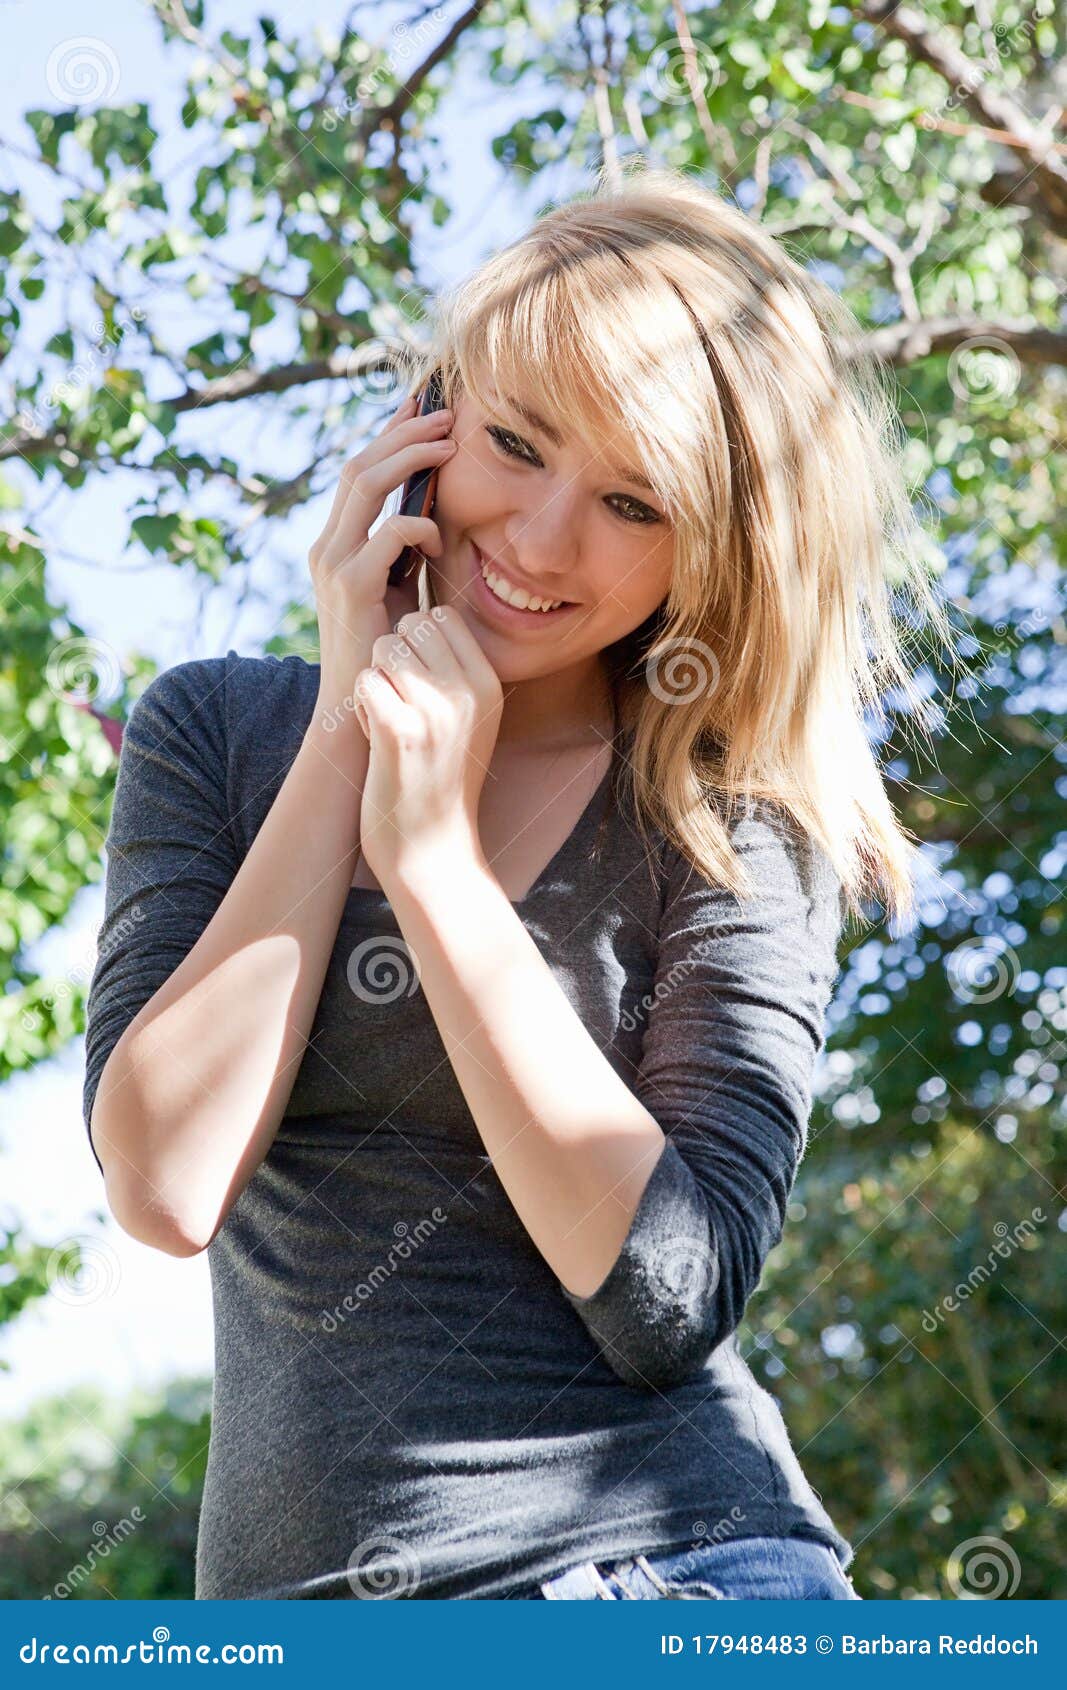 Mooi Meisje dat op Mobiele Telefoon, de Telefoon van de Cel spreekt. Vrij blonde tiener die op celtelefoon spreekt (mobiele telefoon) in openlucht op een zonnige dag.